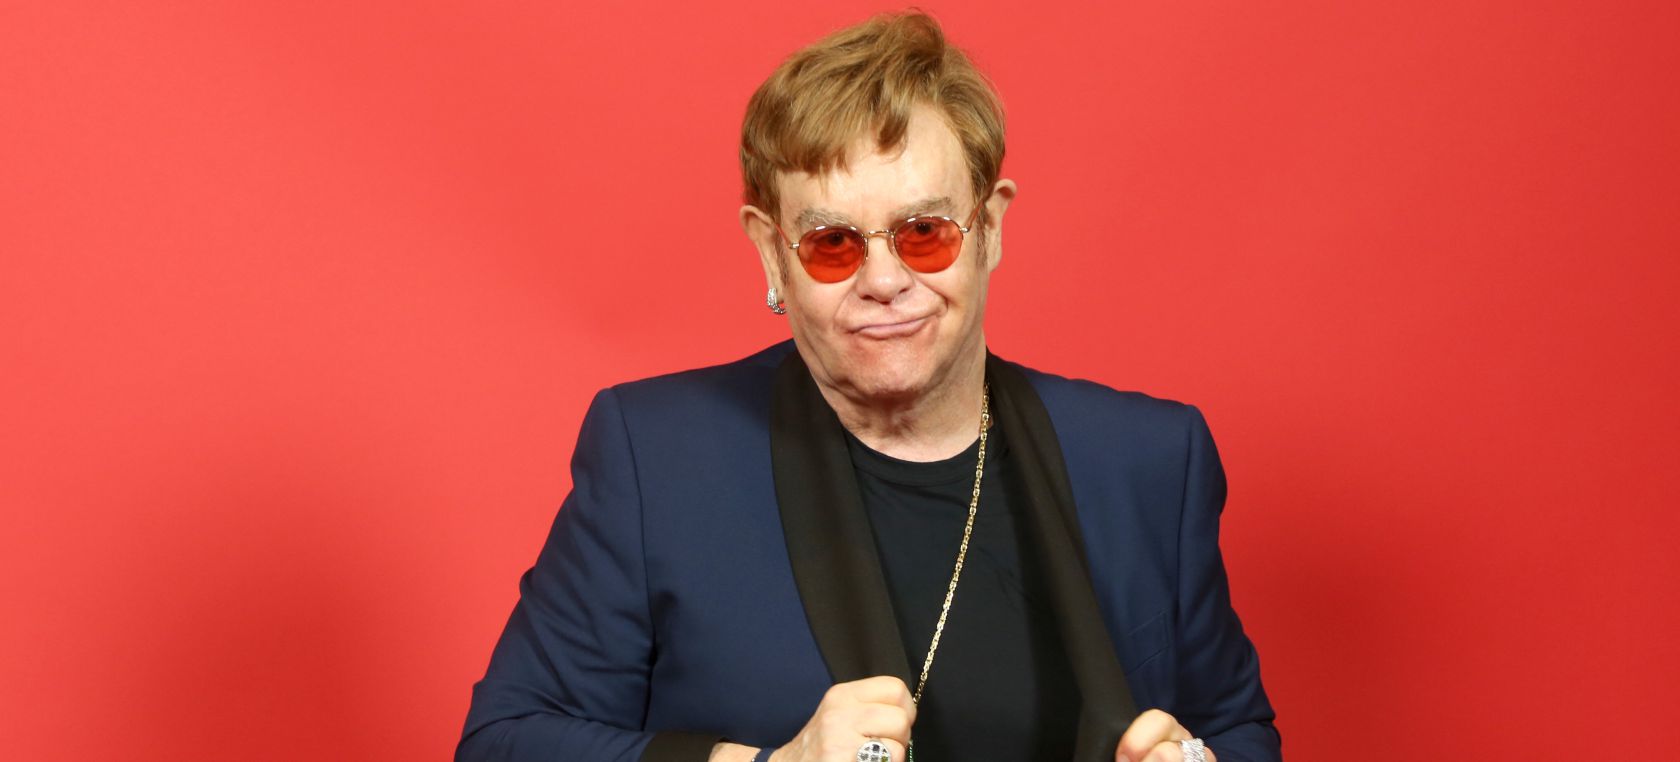 Elton John disfrazado de Pato Donald y cantando ‘Your song’ en Central Park: “No podía parar de reírme”